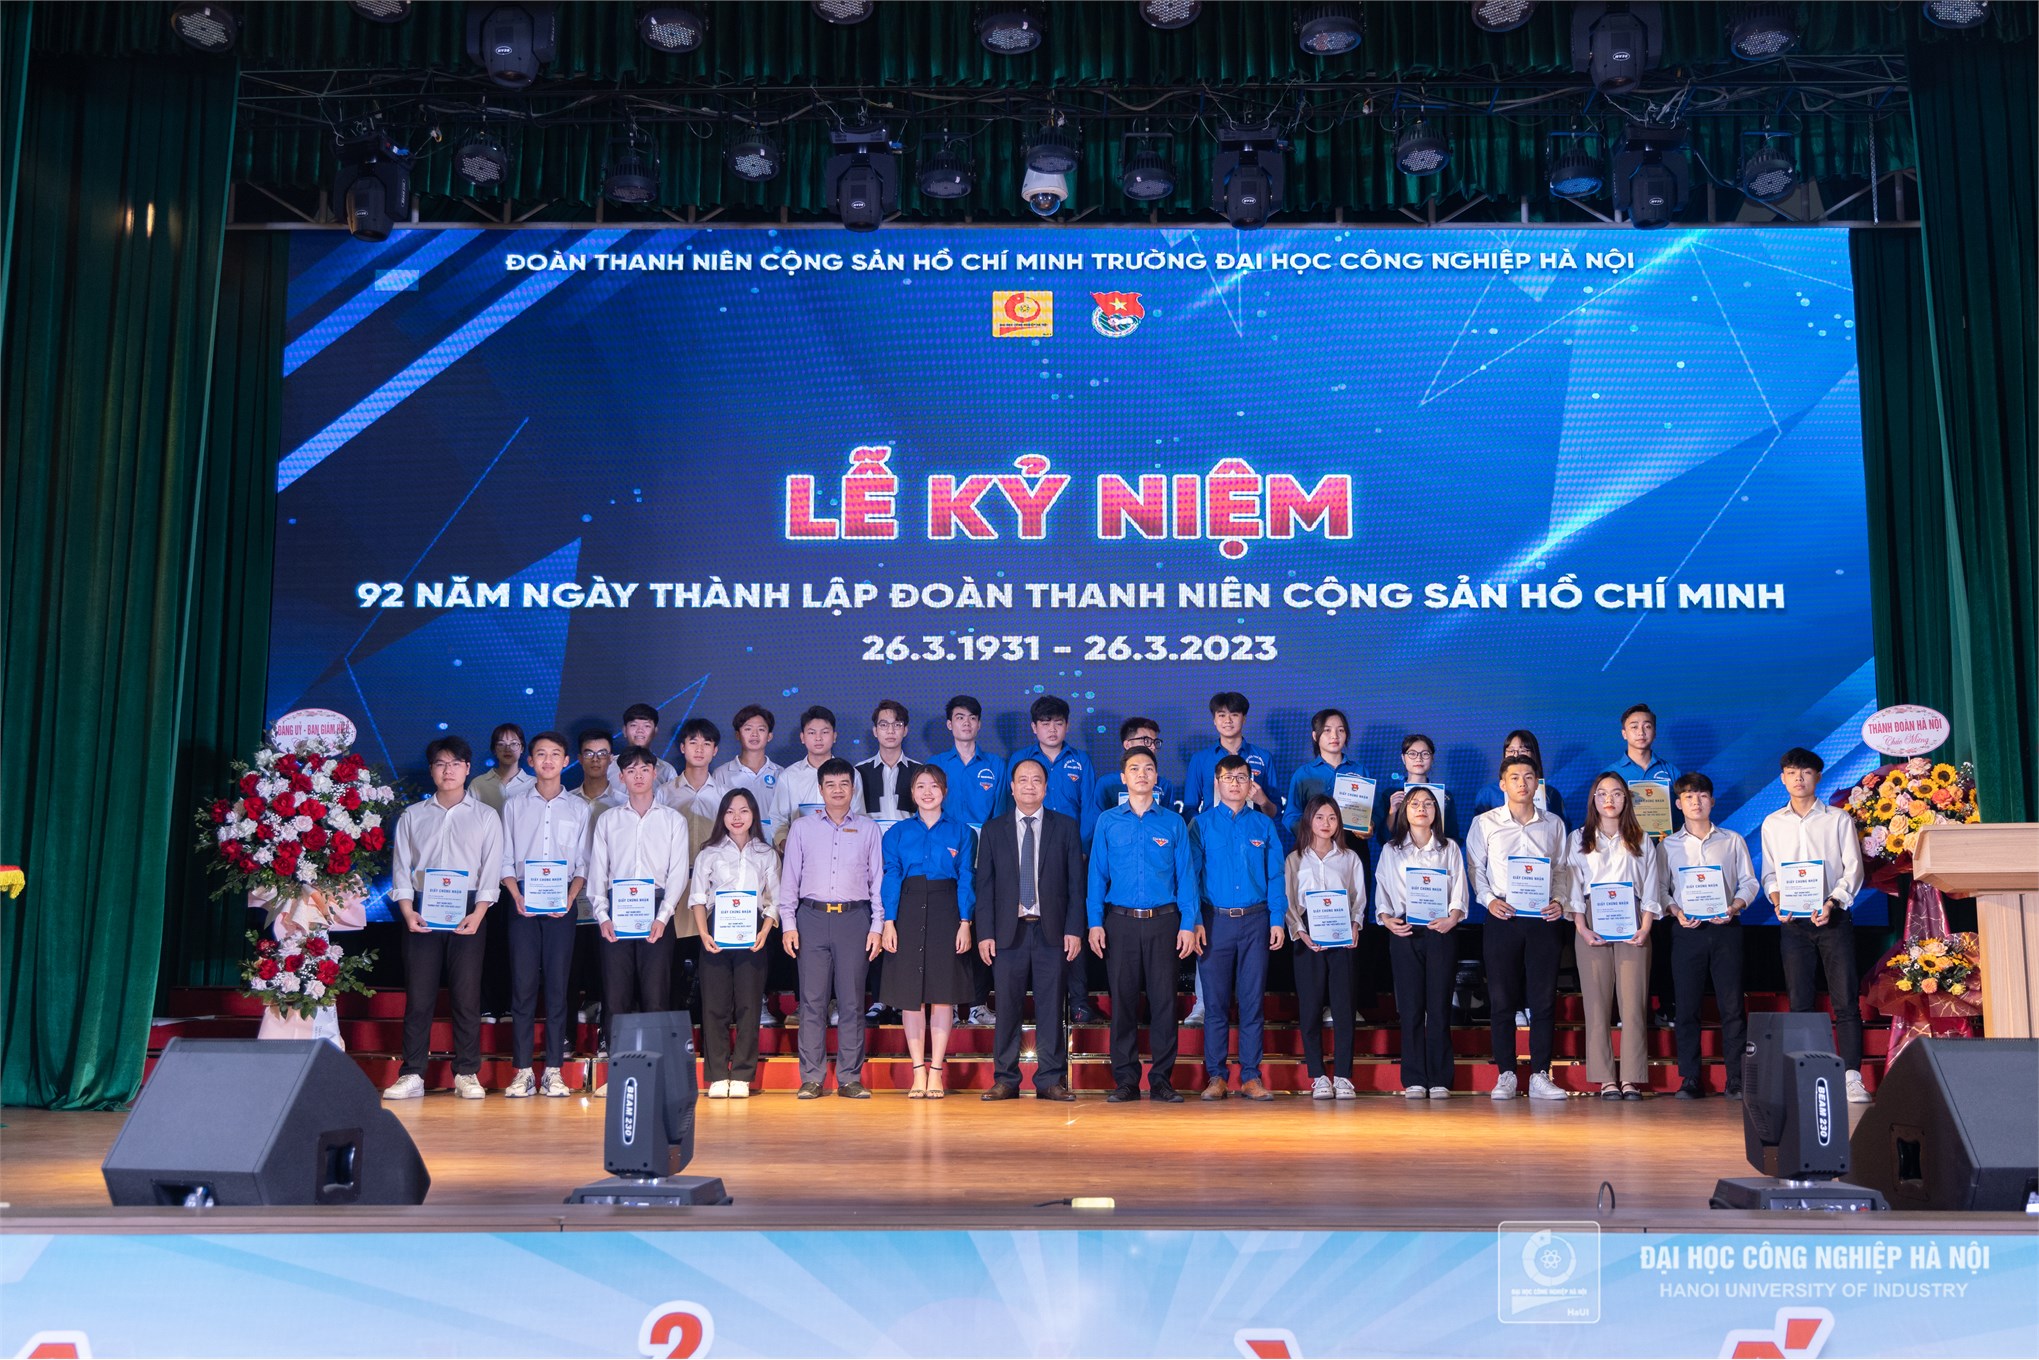 Tuổi trẻ Đại học Công nghiệp Hà Nội kỷ niệm 92 năm ngày thành lập Đoàn TNCS Hồ Chí Minh